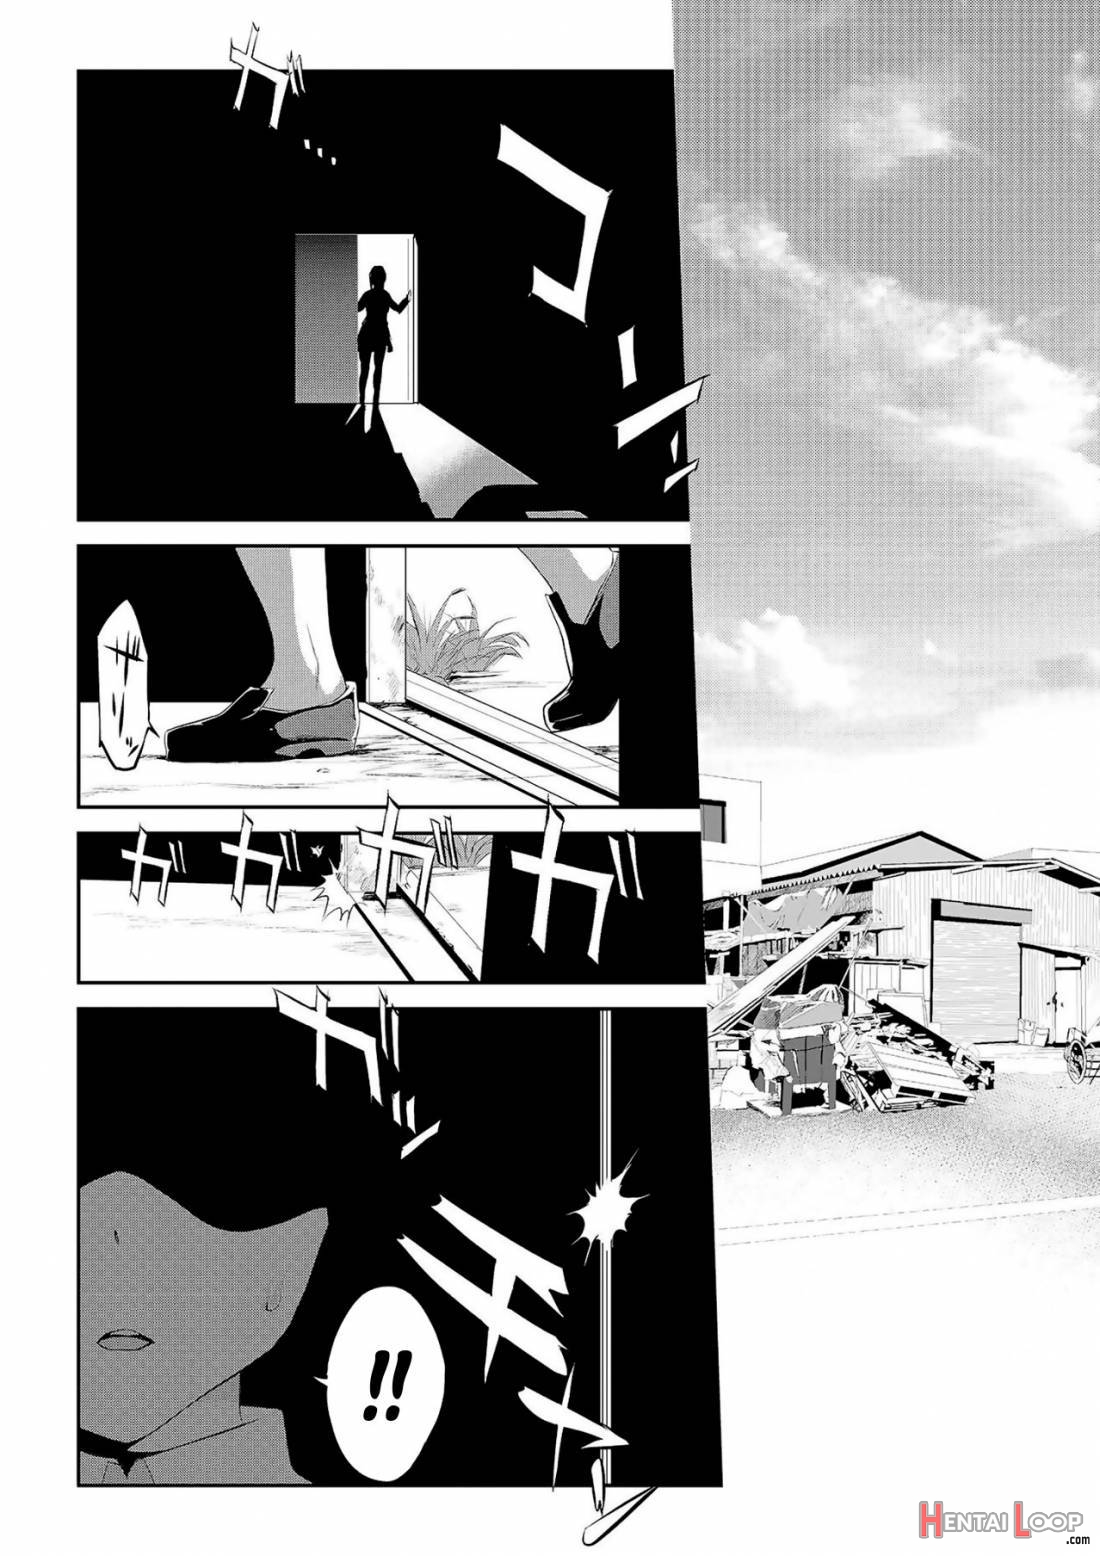 Himitsu 04 “Yakusoku” page 17